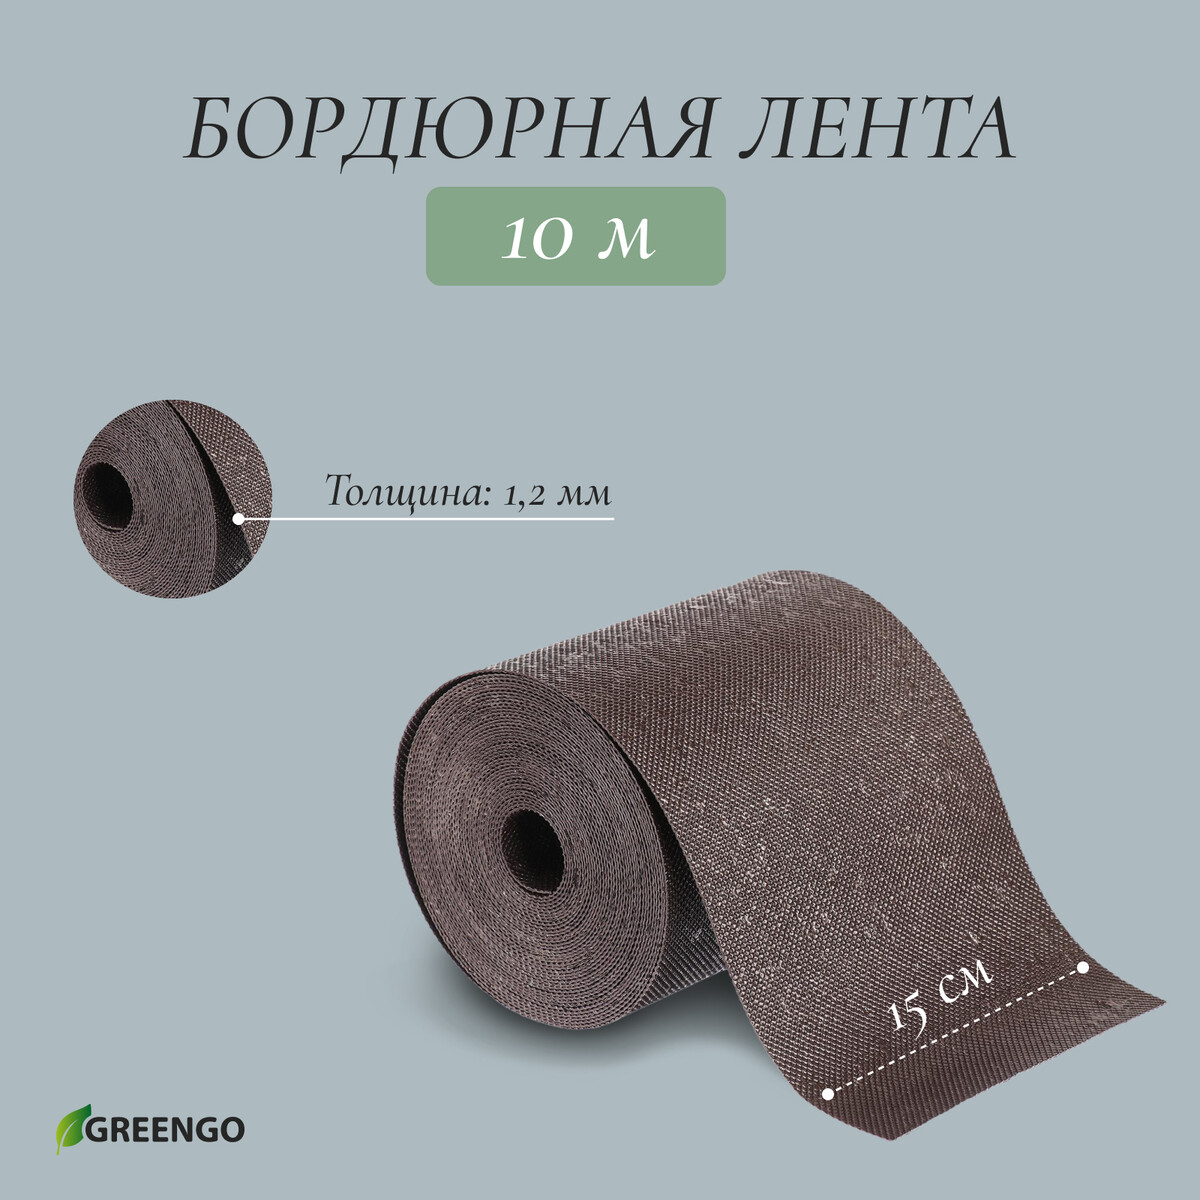 Лента бордюрная, 0.15 × 10 м, толщина 1.2 мм, пластиковая, коричневая, greengo лента бордюрная 0 15 × 9 м толщина 1 2 мм пластиковая фигурная коричневая